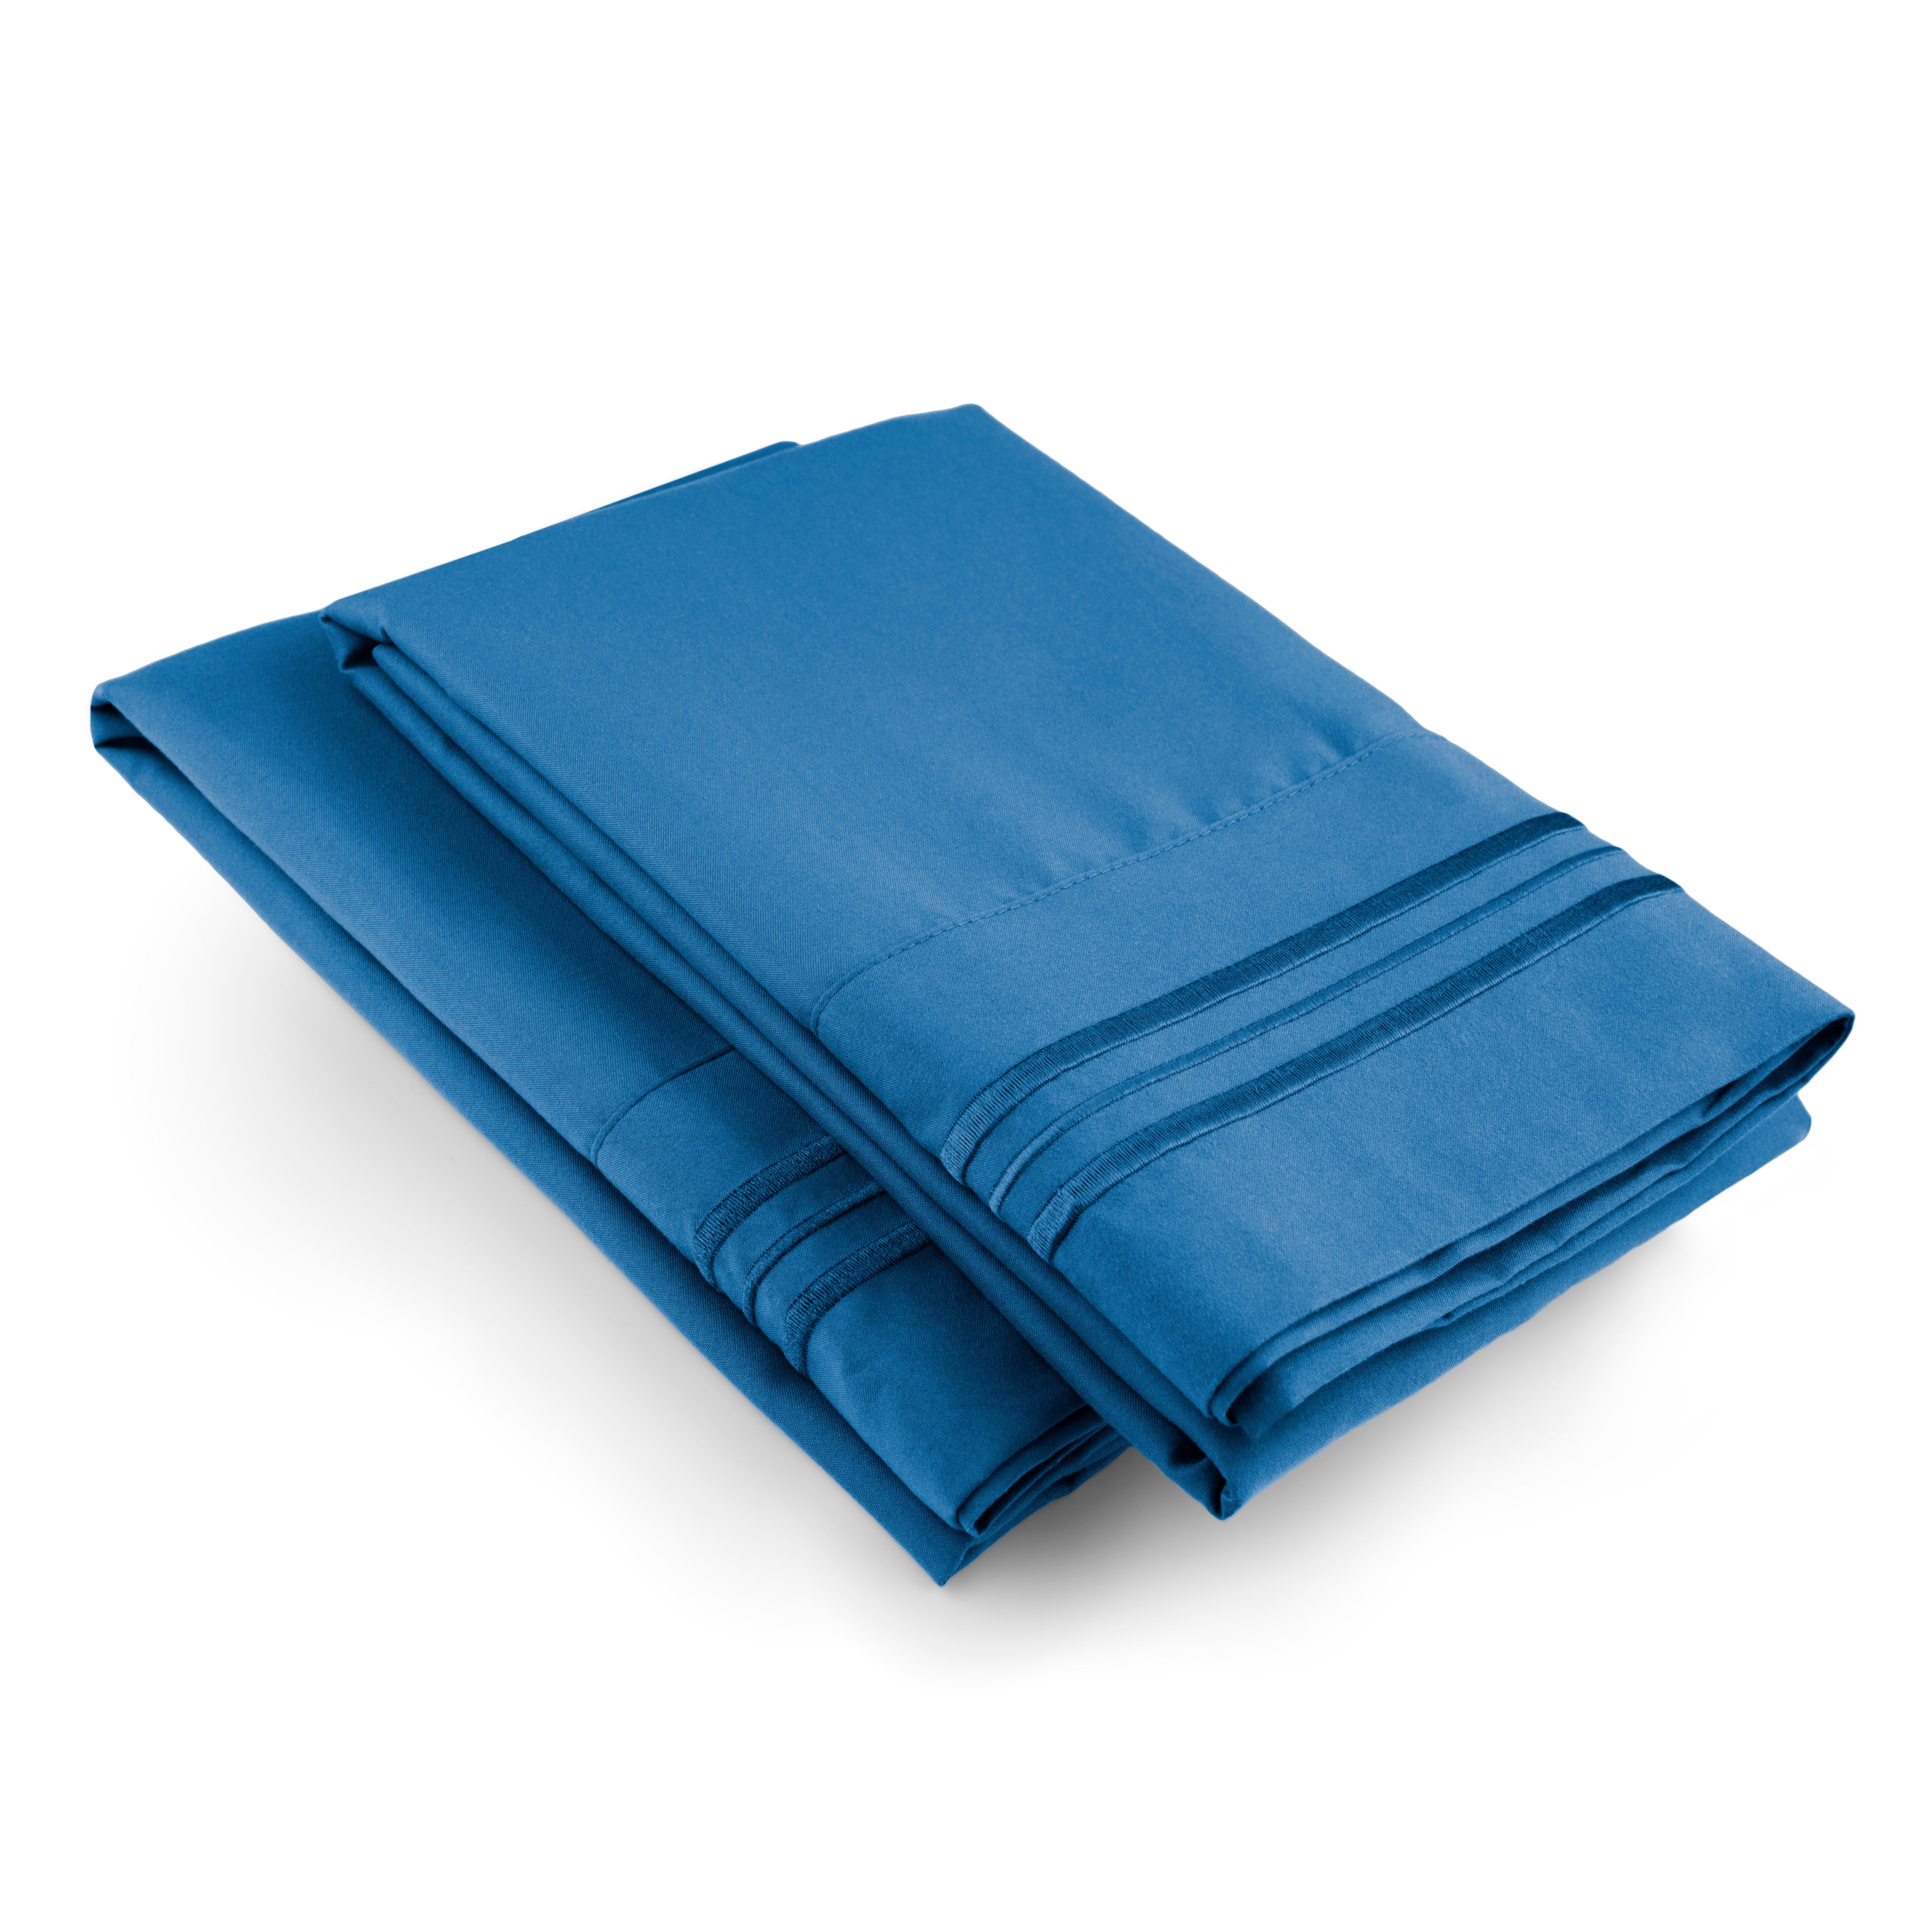 2 Pillowcase Set - Royal Blue